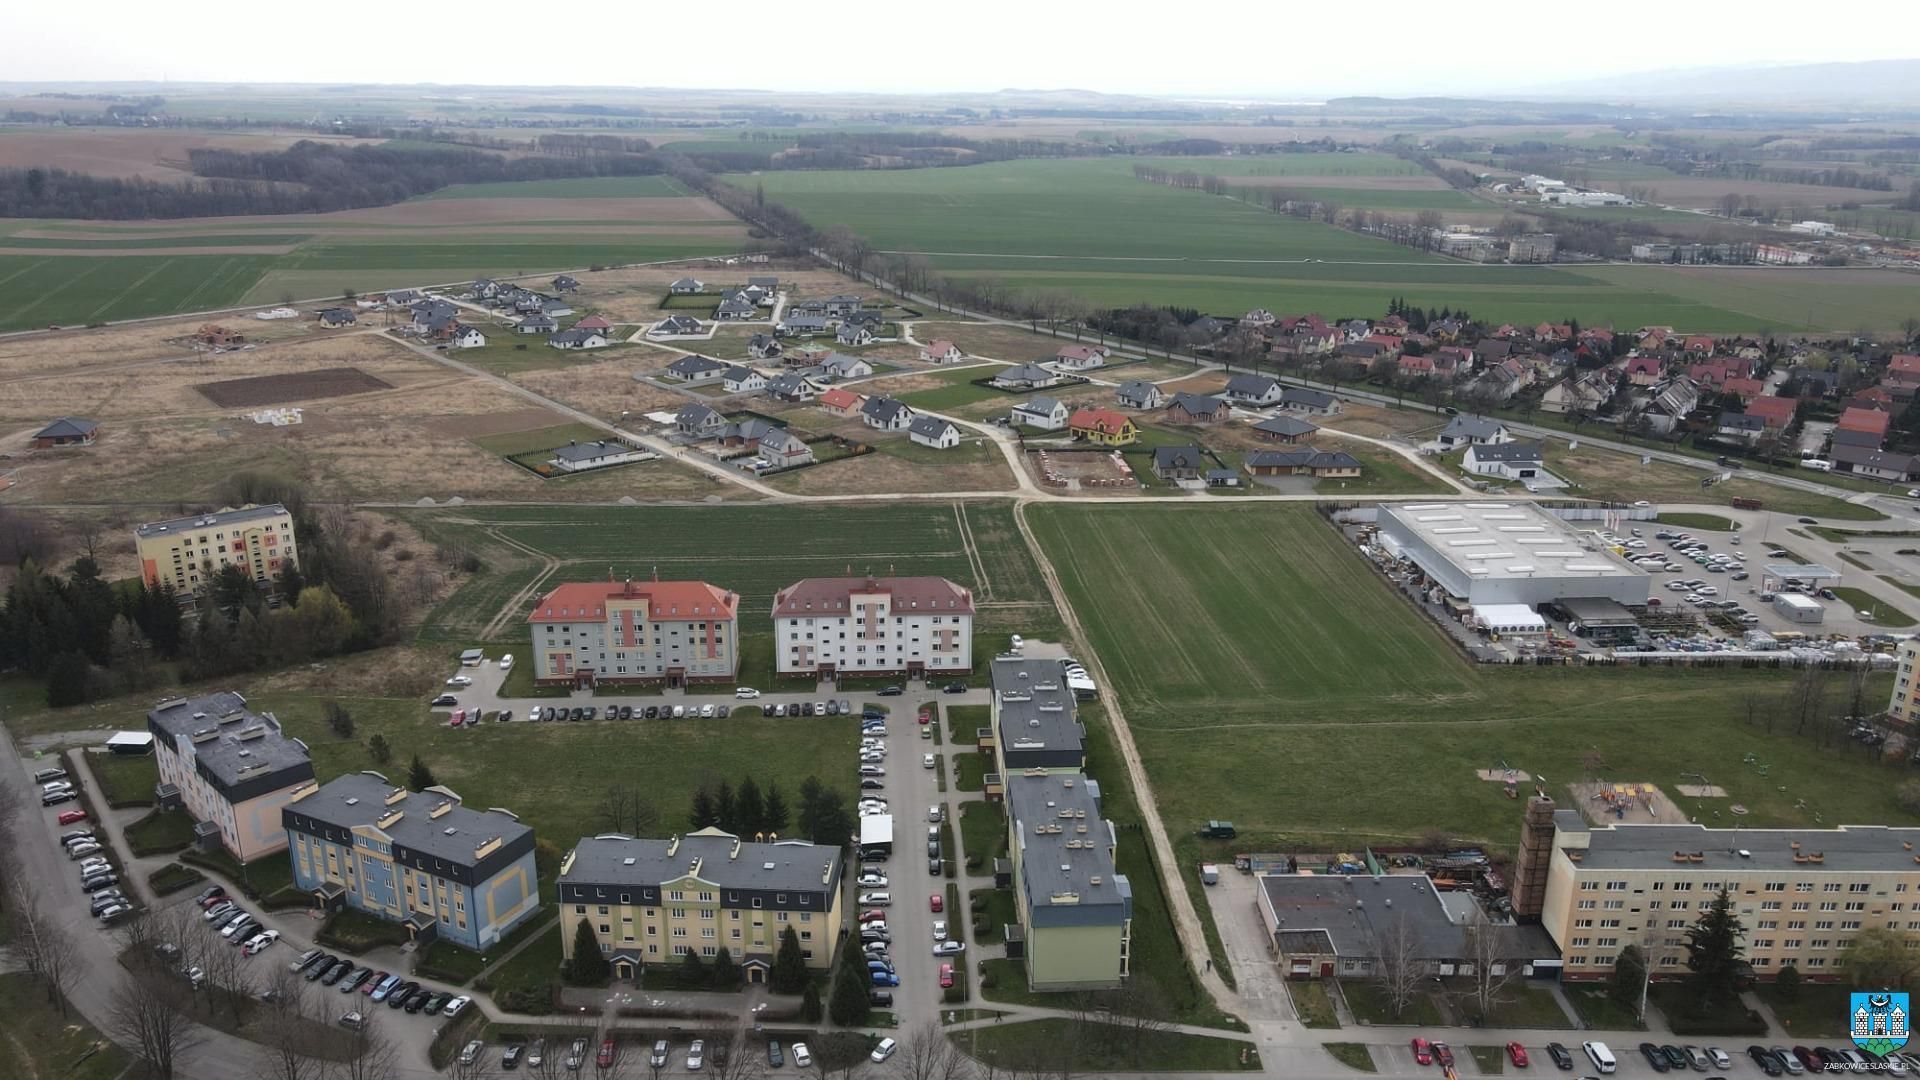 Za ponad 6 mln zł TBS wybuduje 24 mieszkania na wynajem w Ząbkowicach Śląskich